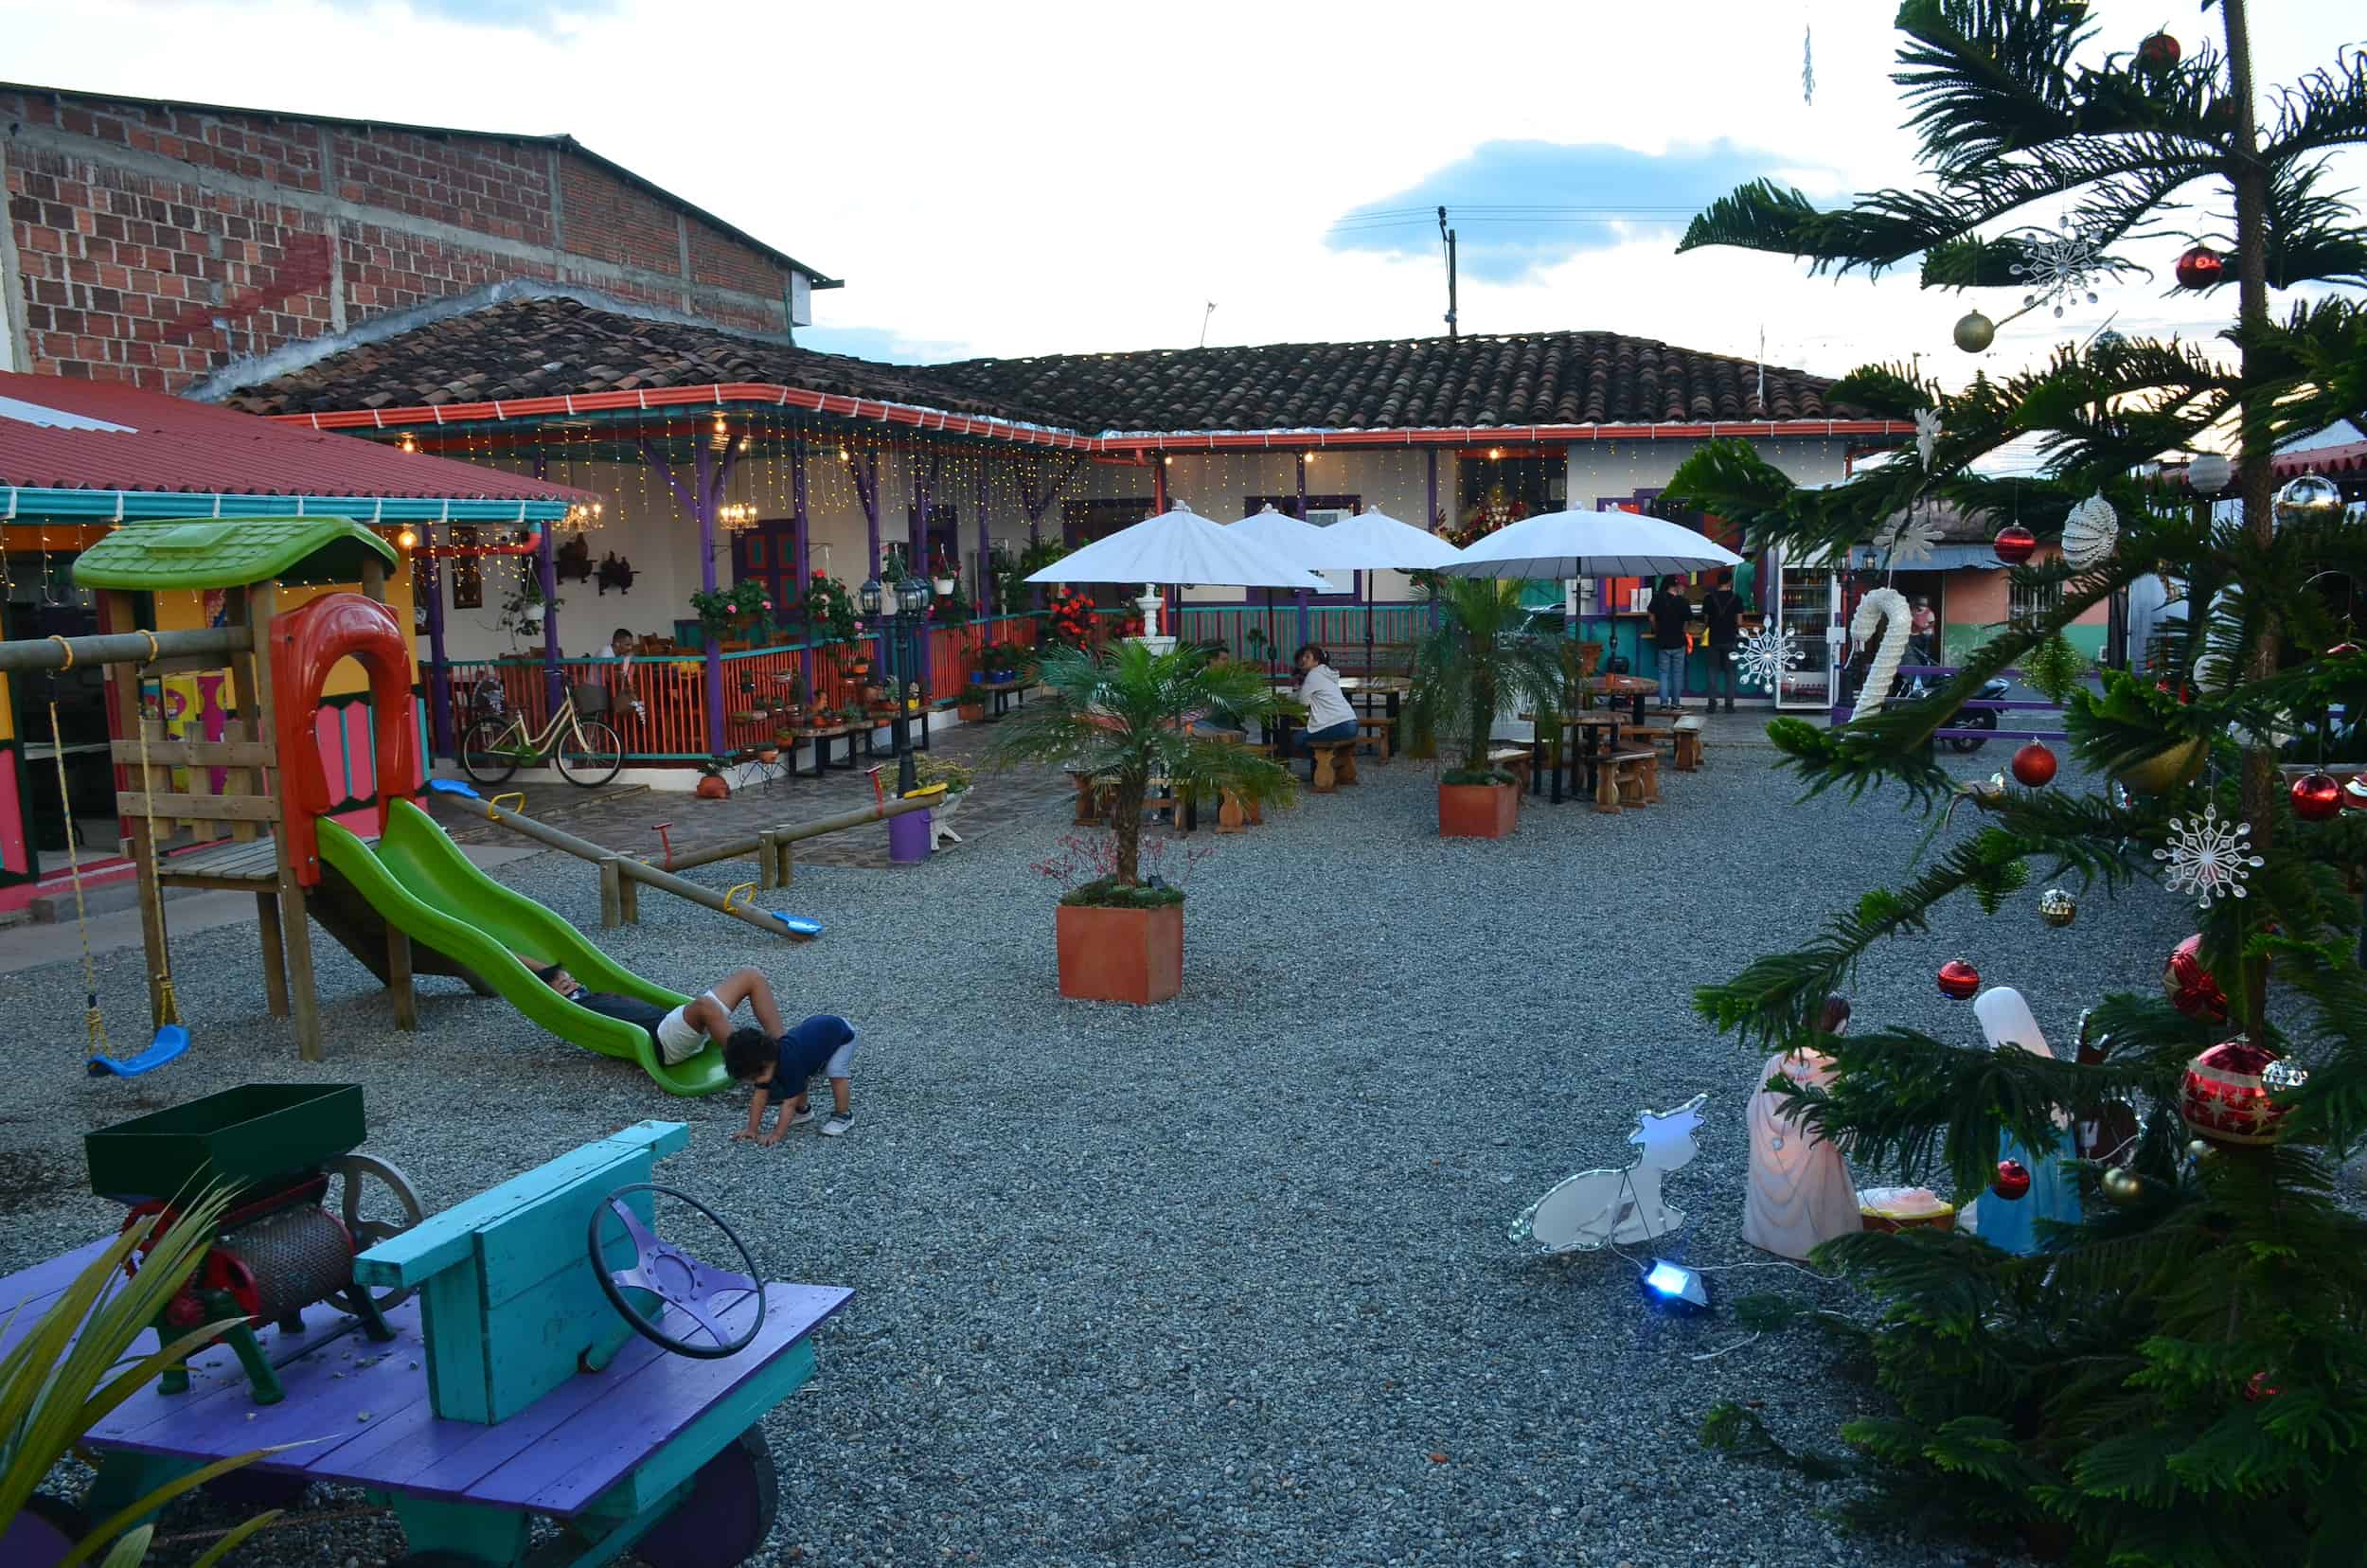 Terrace at Café Palomino in Sevilla, Valle del Cauca, Colombia